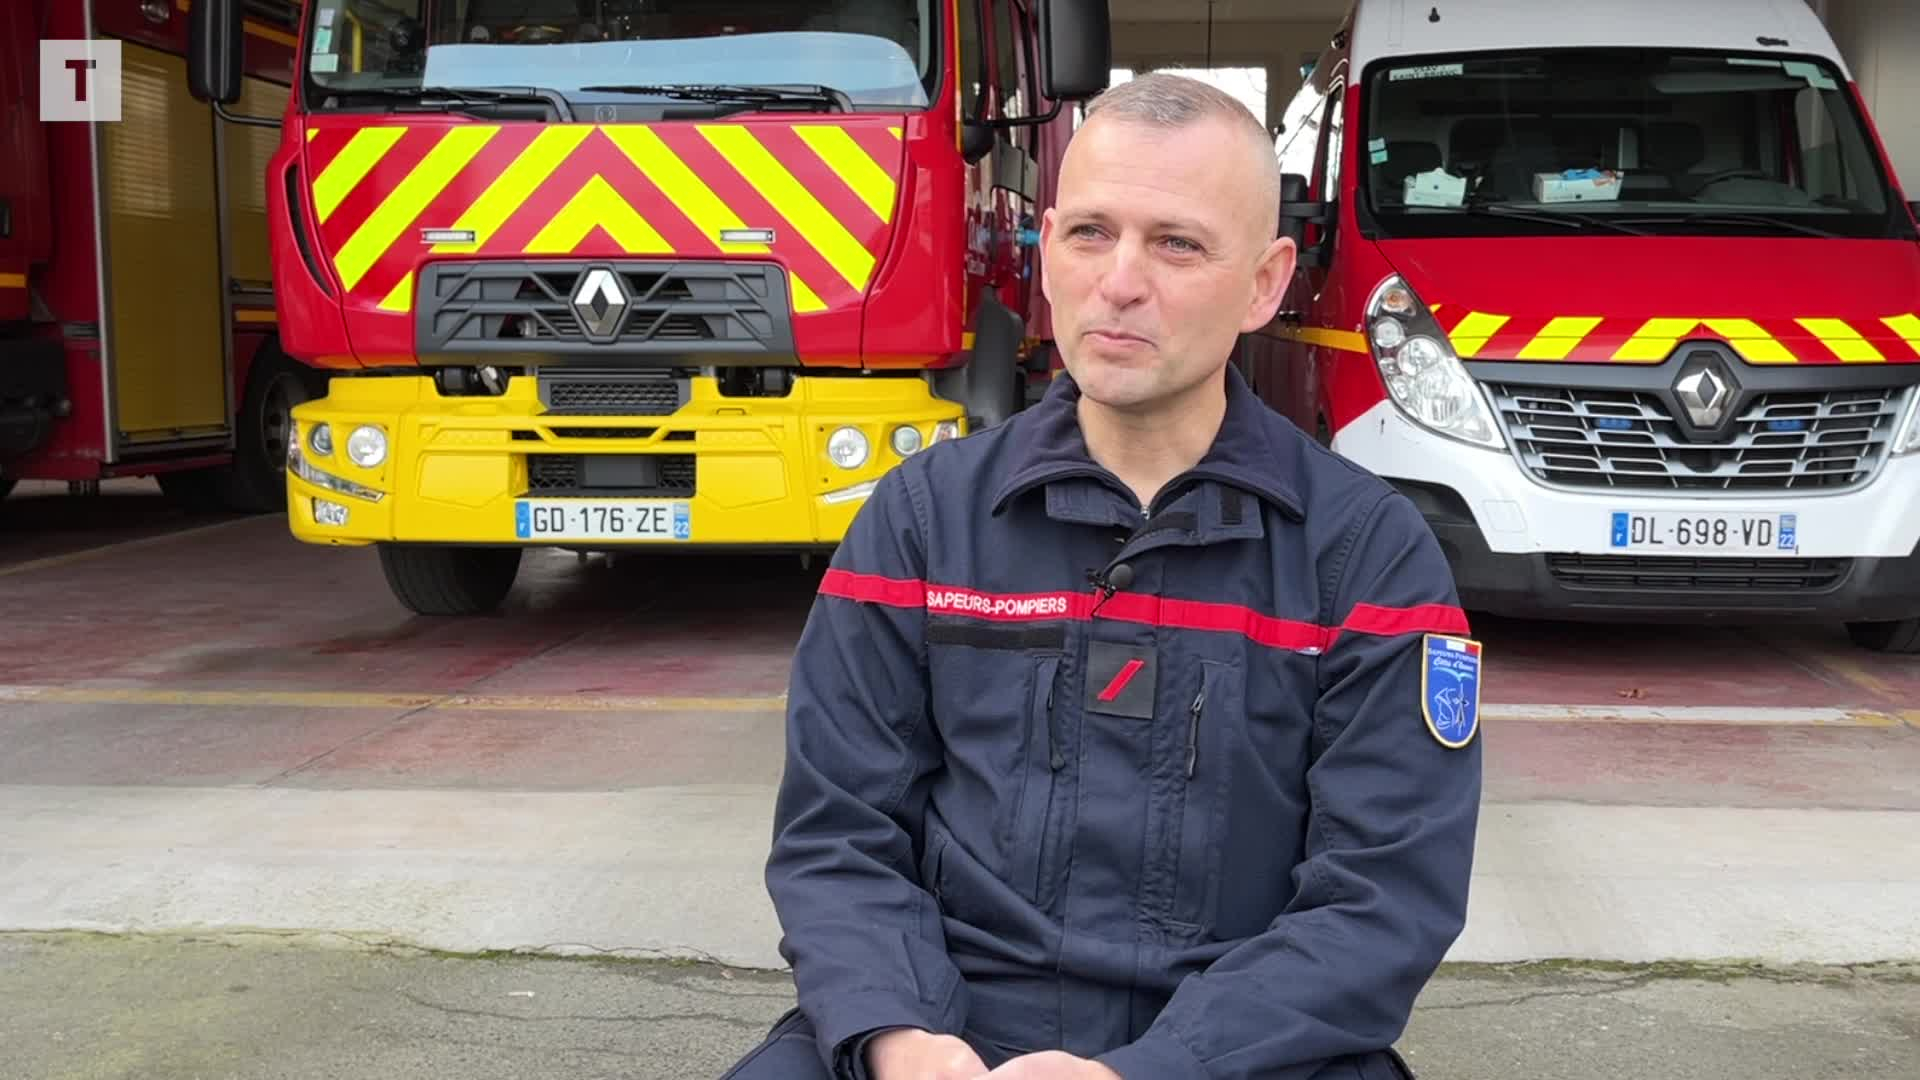 À Saint-Brieuc, ce général de l'armée réalise son rêve chez les pompiers [Vidéo]